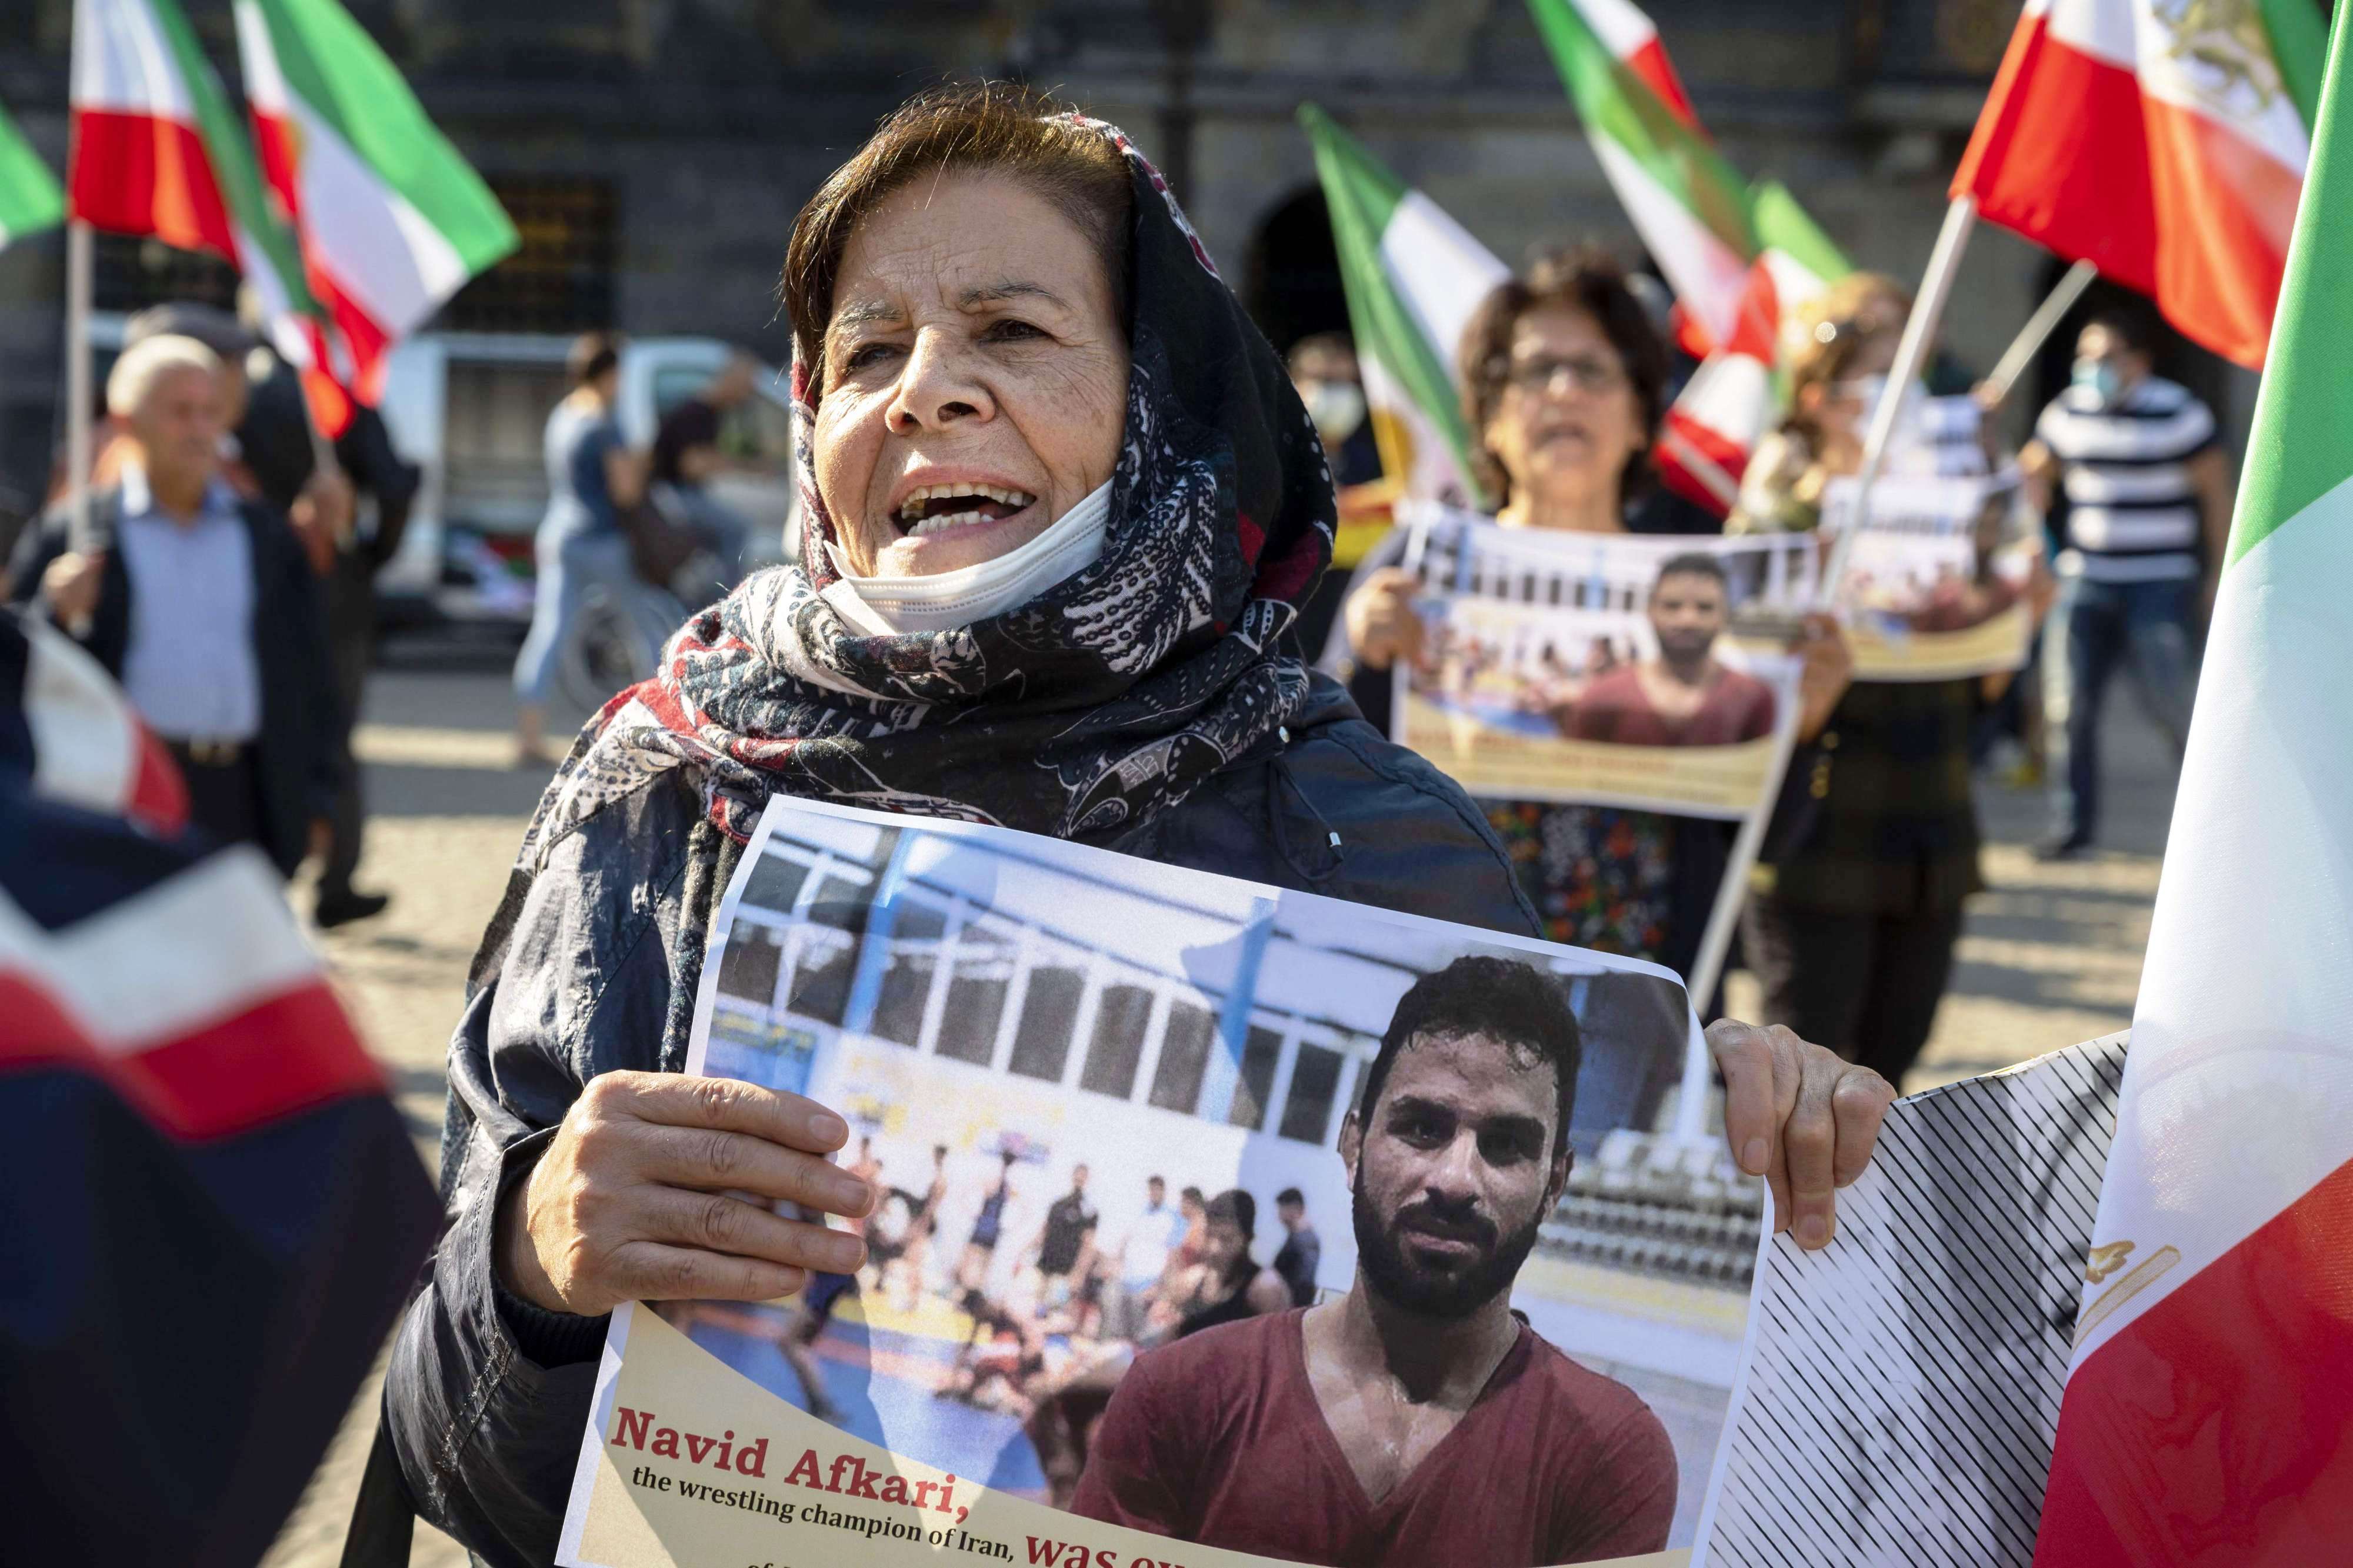 عائلات ضحايا القمع في إيران يطالبون برحيل النظام لإنهاء عقود من العذاب والجوع والبؤس